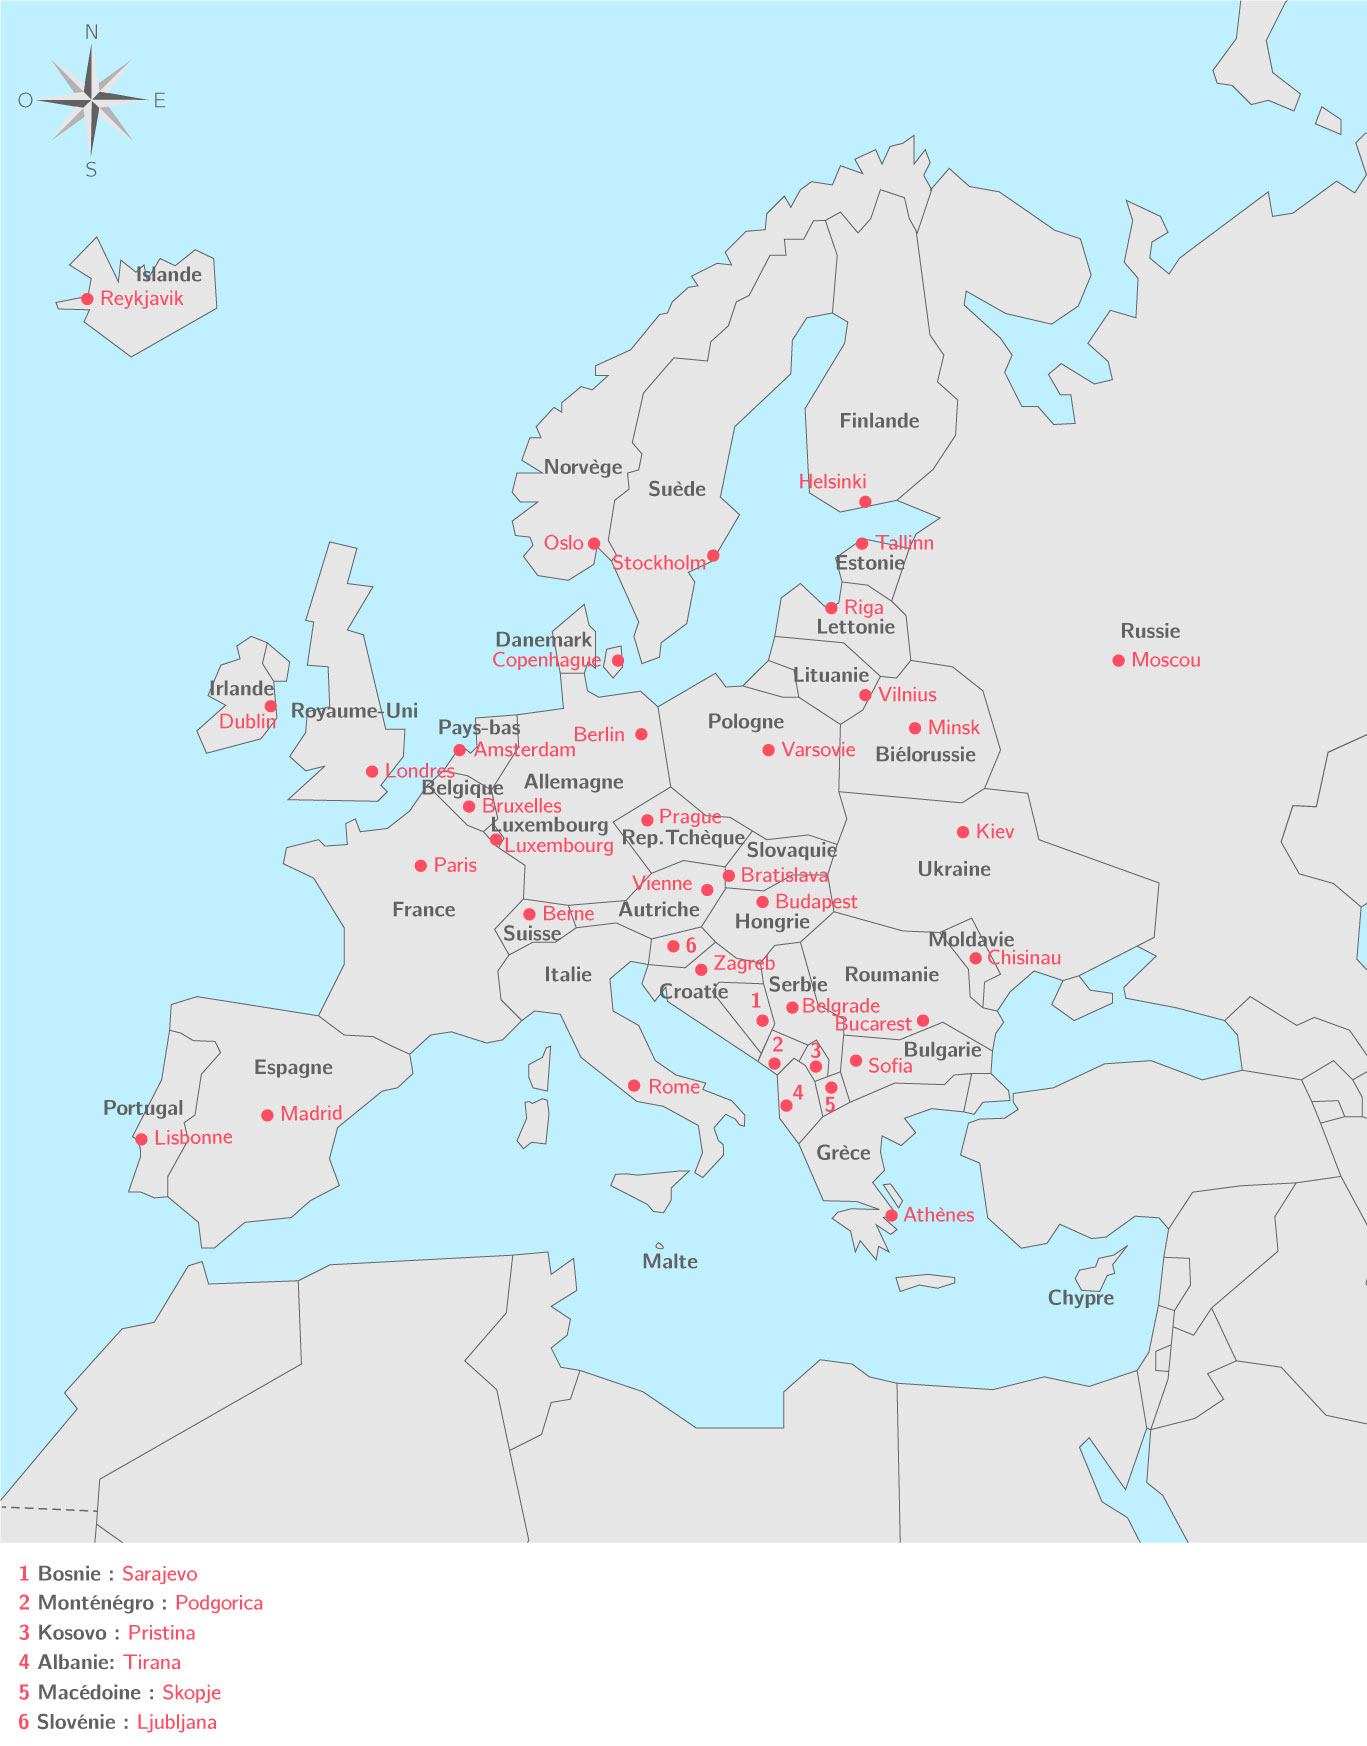 Les Pays Européens Et Leurs Capitales - 3E - Carte concernant Pays Et Capitales D Europe